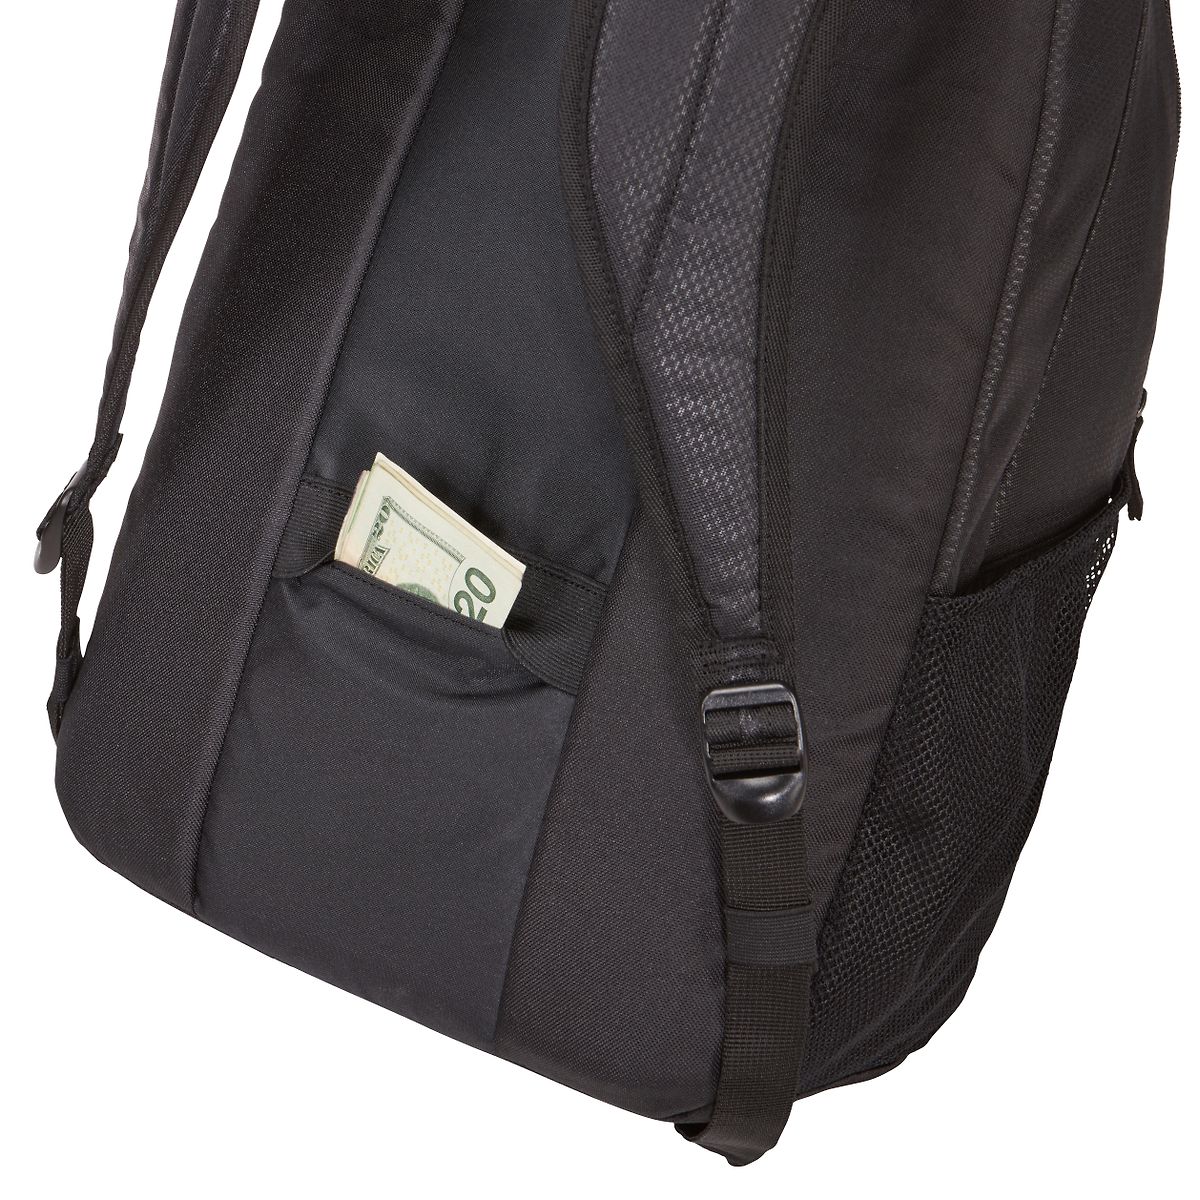 CASE LOGIC - Black 17'' Laptop Backpack